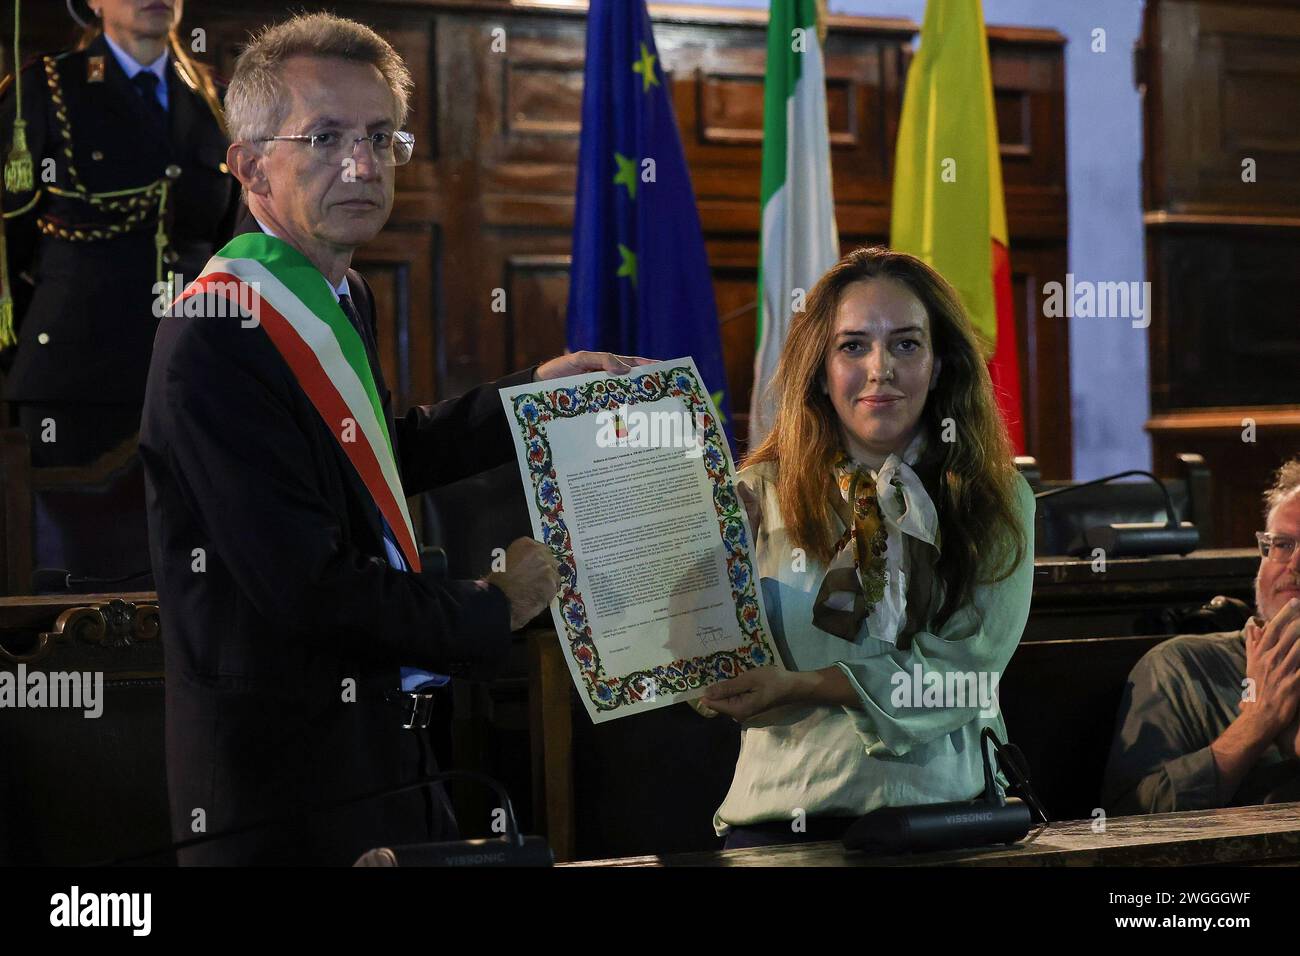 Le maire de Naples Gaetano Manfredi remet à Stella Moris le parchemin pour l'attribution de la citoyenneté d'honneur de Naples à Julian Assange. Banque D'Images